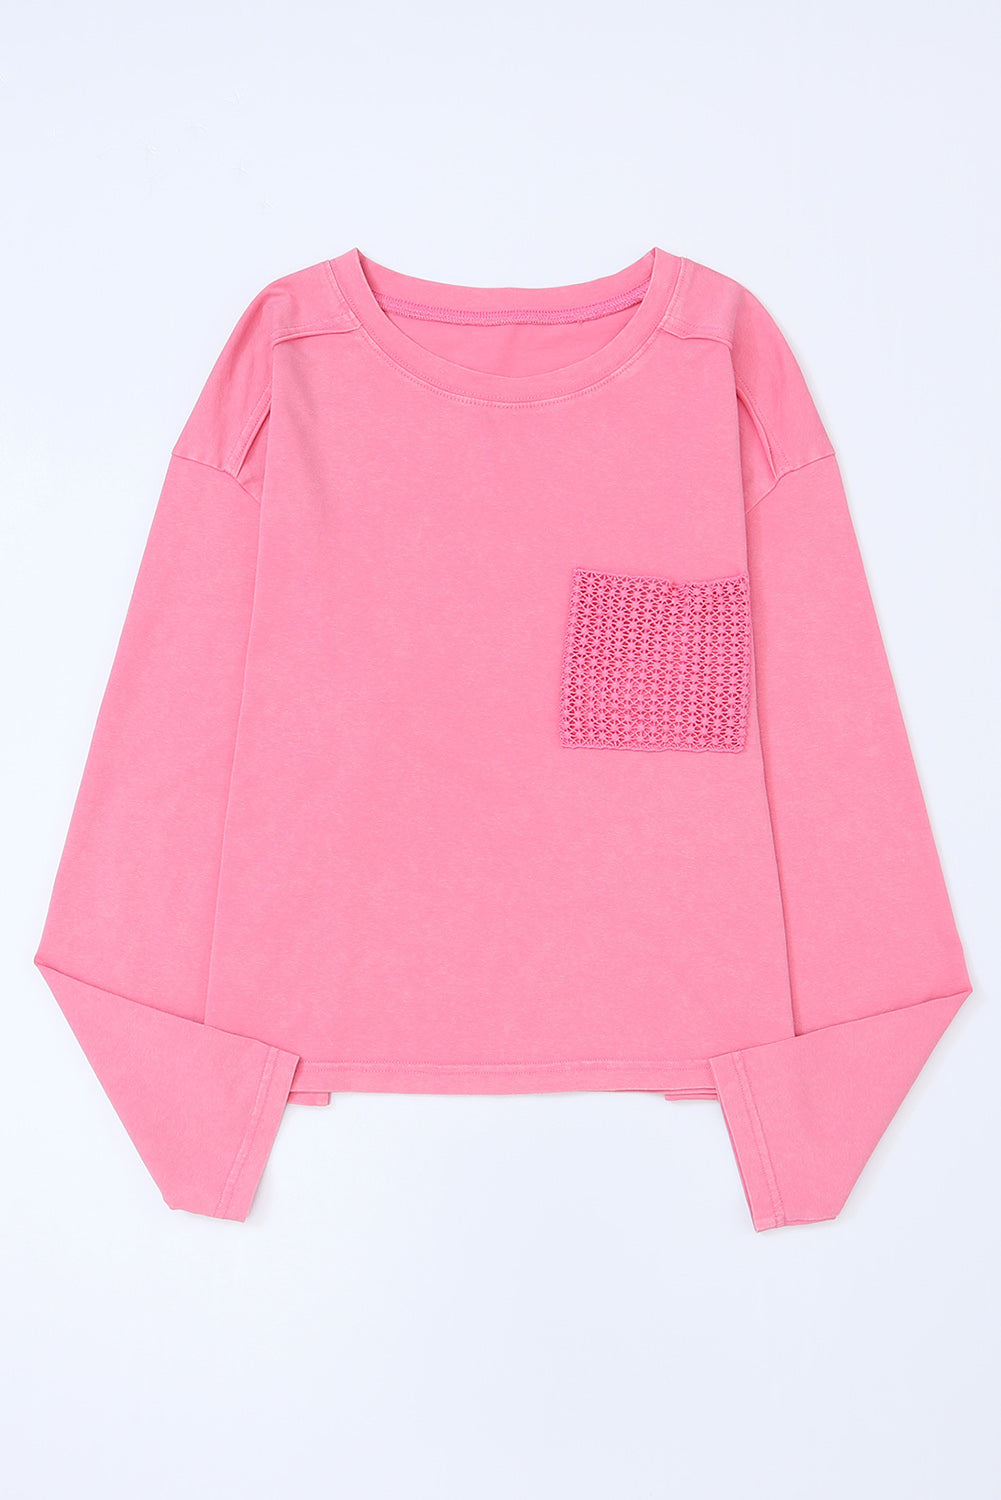 Rosafarbenes, langärmliges T-Shirt mit aufgesetzter Tasche und Spitze